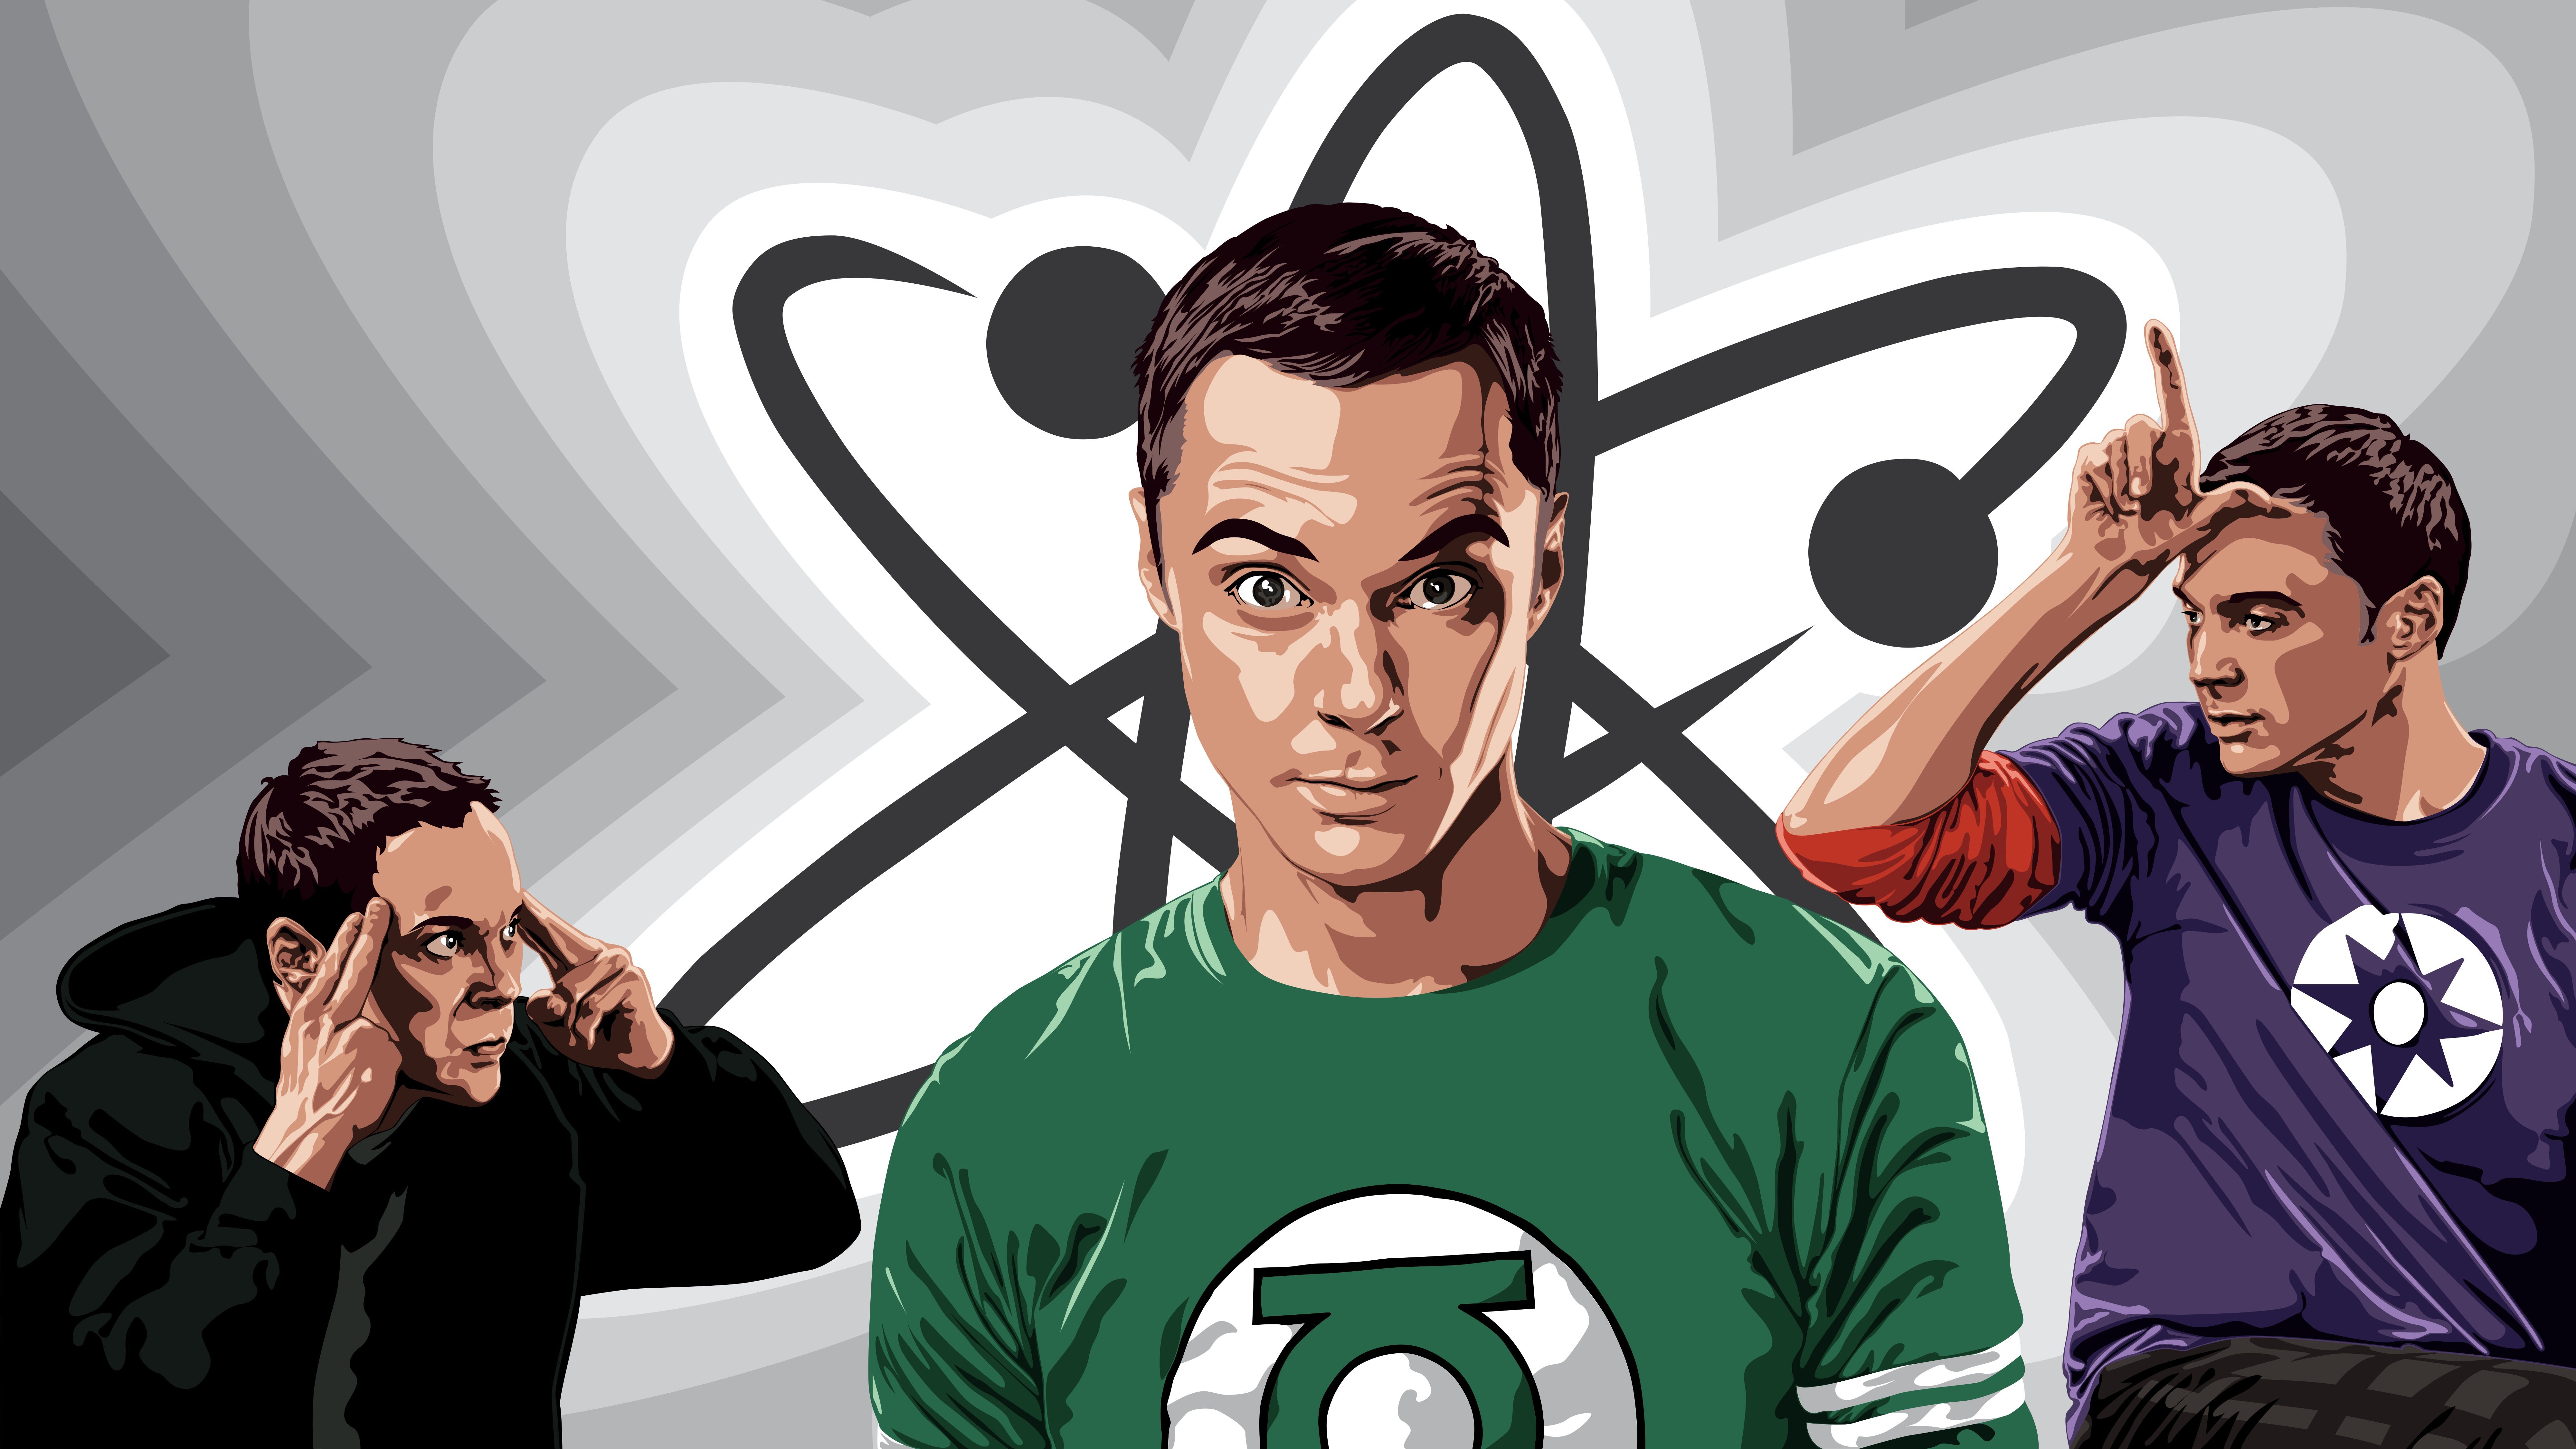 Wallpaper, illustration, cartoon, brand, The Big Bang Theory